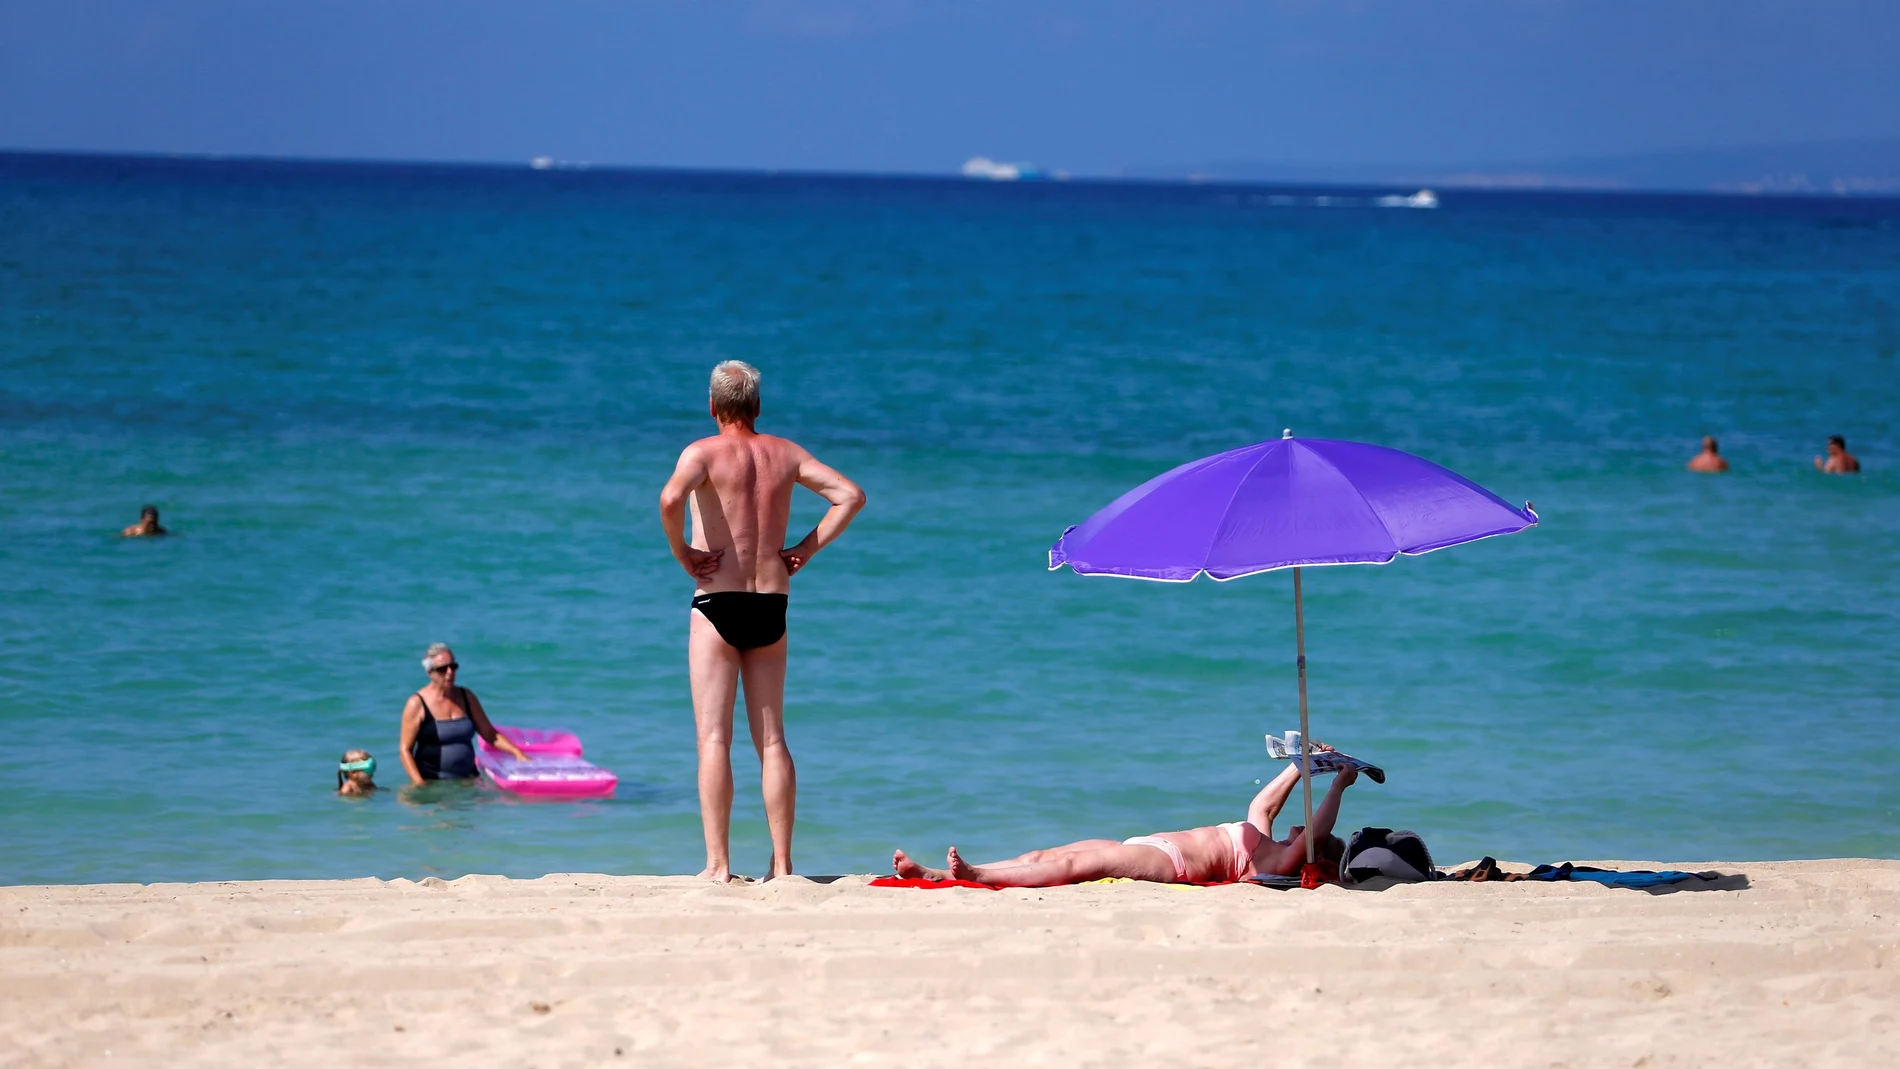 Veraneantes en la playa de El Arenal beach en Mallorca el pasado mes de agosto, una imagen que puede que no se vuelva a repetir